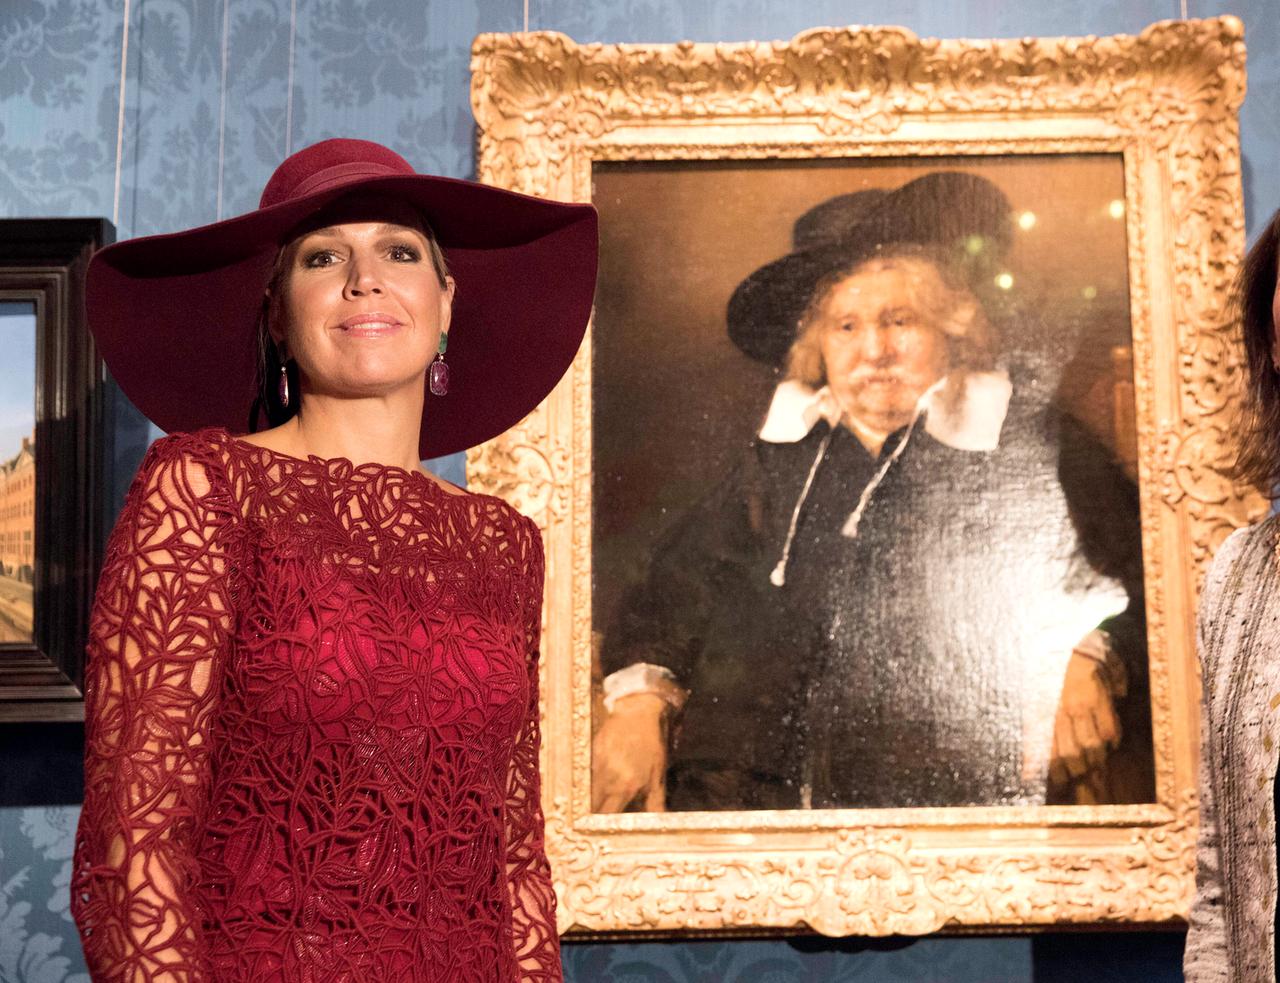 Eine Frau mit Hut und Strickkleid steht vor einem barocken Bild, das einen dicklichen Mann mit großem Kragen und Hut zeigt.